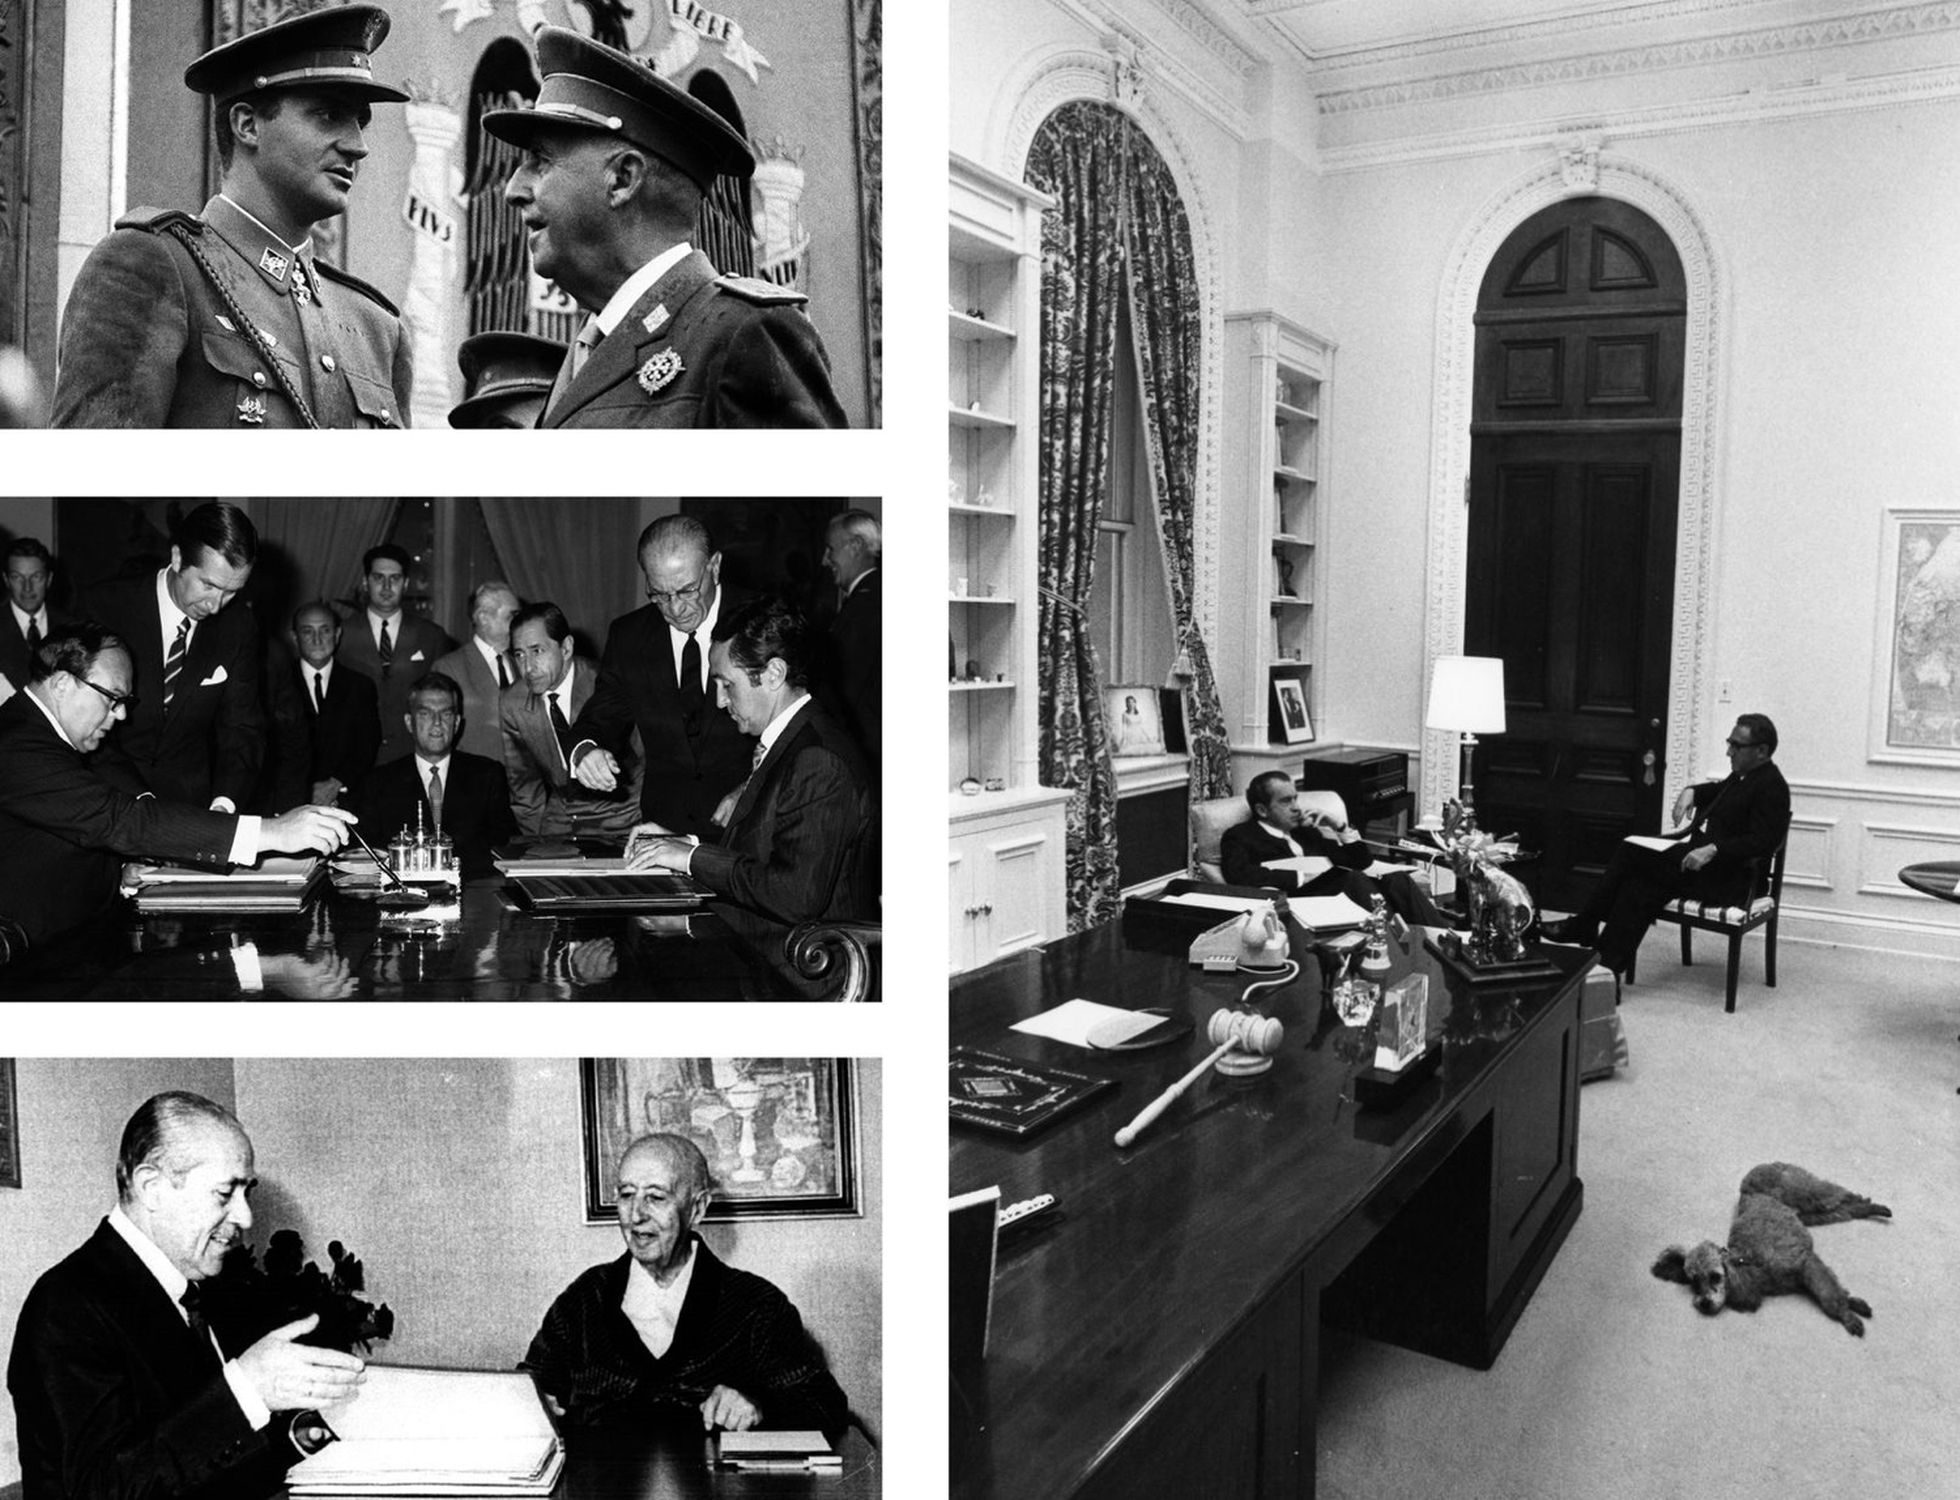 A la izquierda, desde arriba, Franco conversa con el príncipe Juan Carlos durante un desfile militar, en Madrid en 1966. Firma en septiembre de 1970 del Convenio de Amistad y Cooperación entre España y los Estados Unidos entre el ministro de Asuntos Exteriores, Gregorio López Bravo (a la derecha) y el embajador de los EE UU Robert C. Hill (izquierda). Debajo, Franco, ingresado por flebitis, atiende al presidente Arias Navarro en el verano de 1974. A la derecha, Nixon conversa relajadamente con Kissinger en la Casa Blanca.